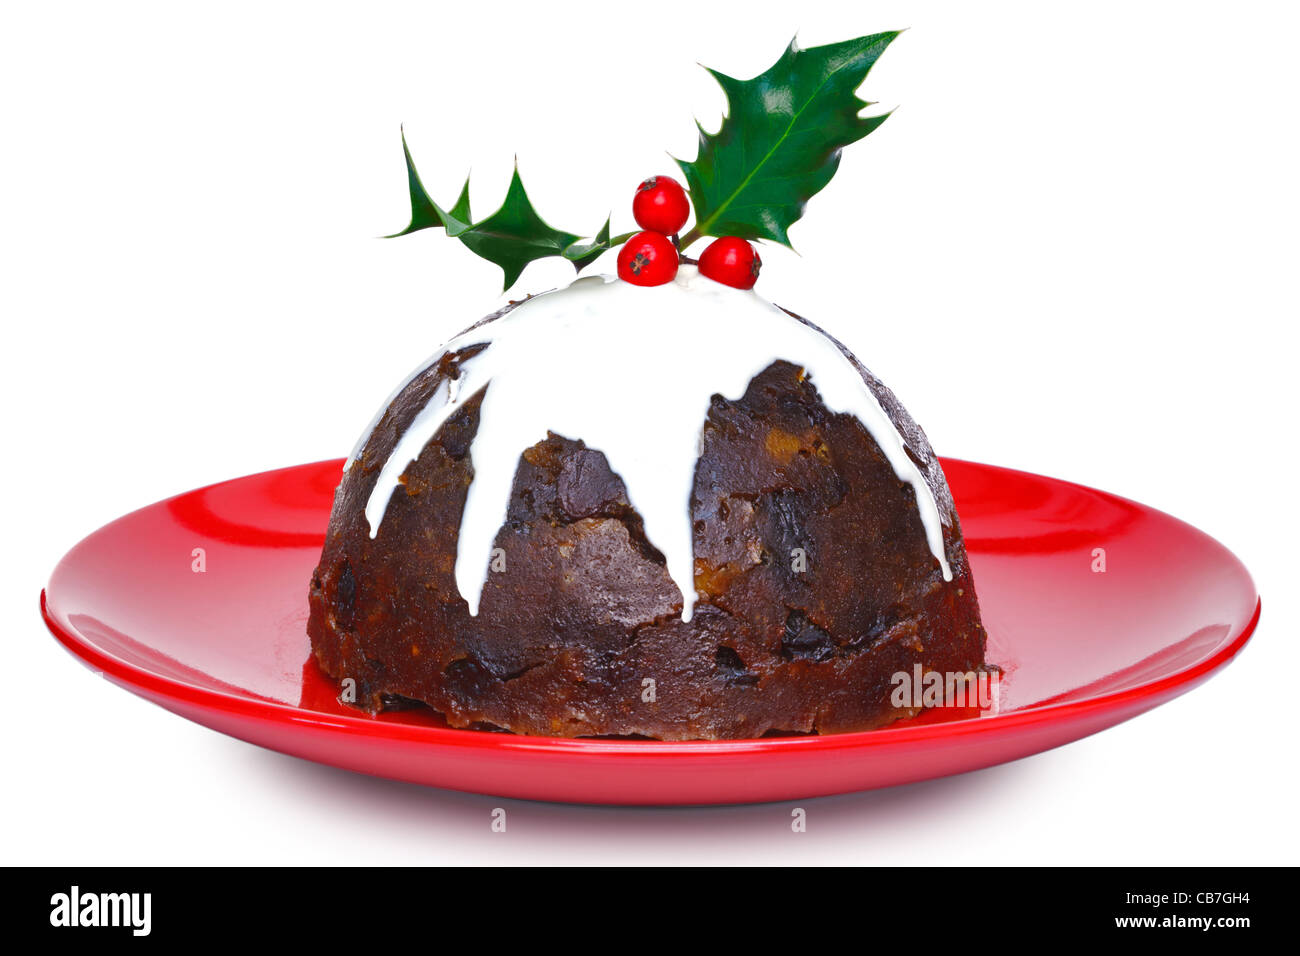 Foto von eine gedämpfte Christmas Pudding mit Sahne und Holly an der Spitze isoliert auf einem weißen Hintergrund. Stockfoto